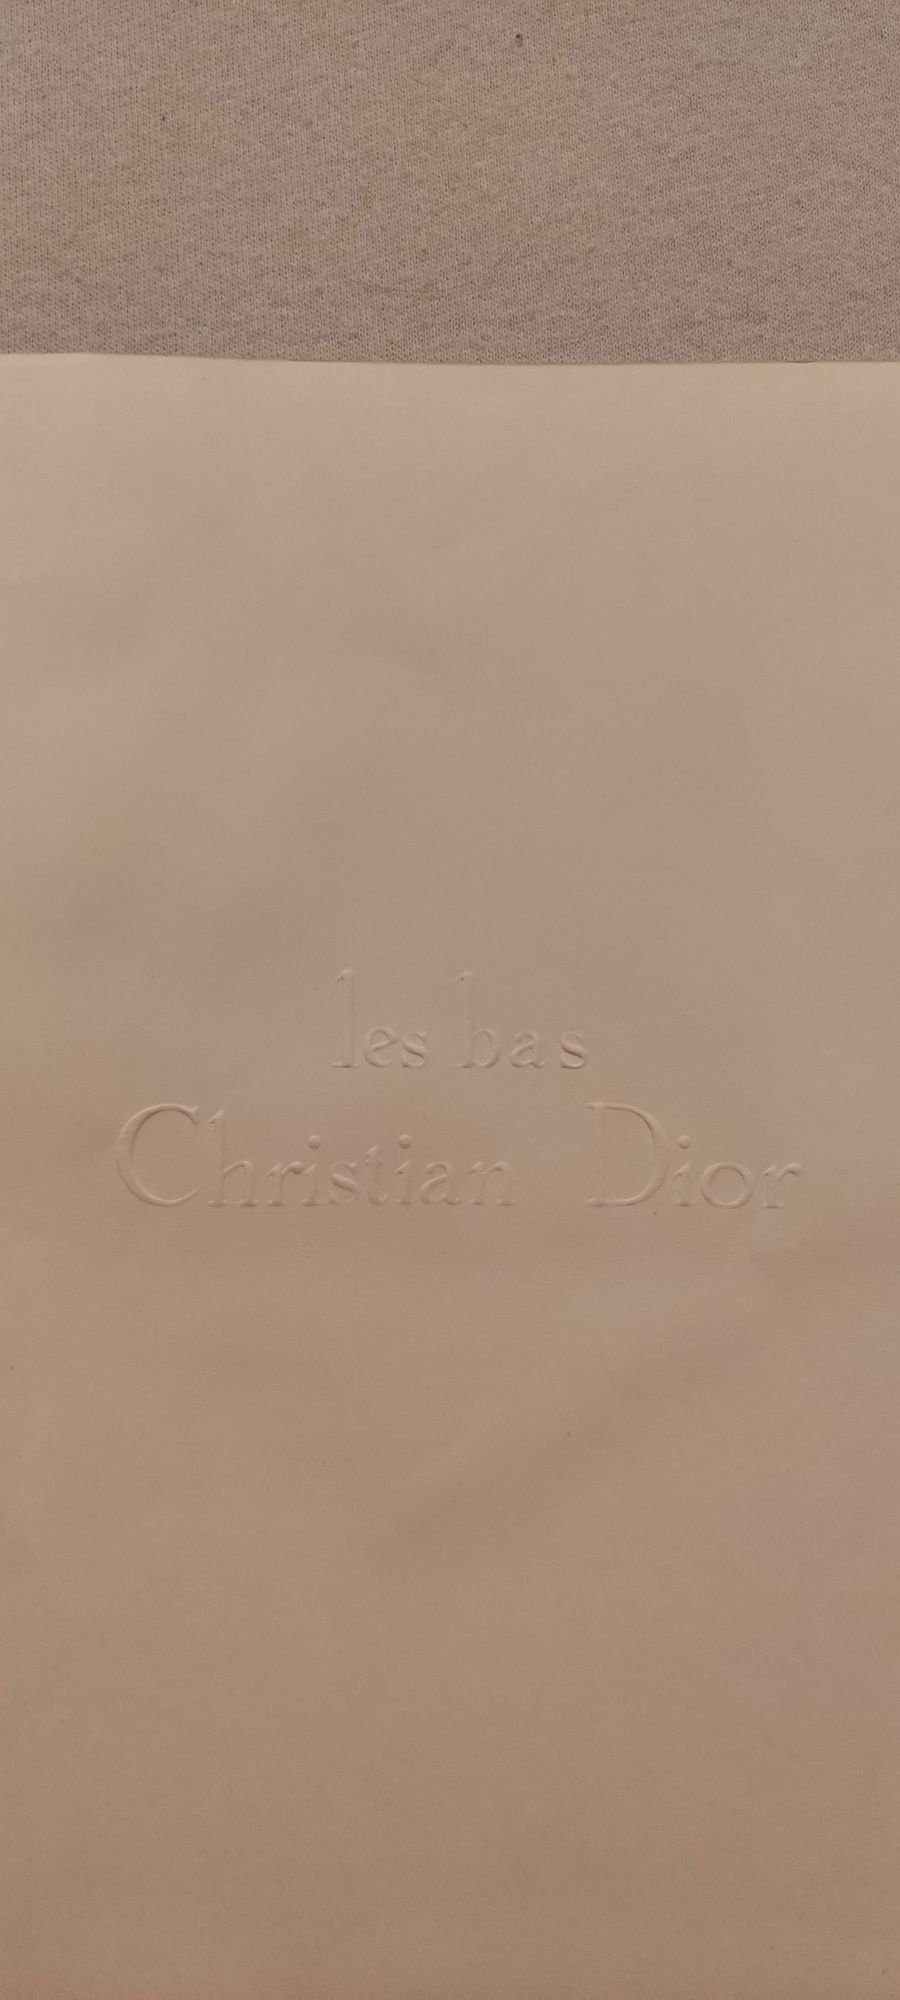 Christian Dior pończochy nylonowe